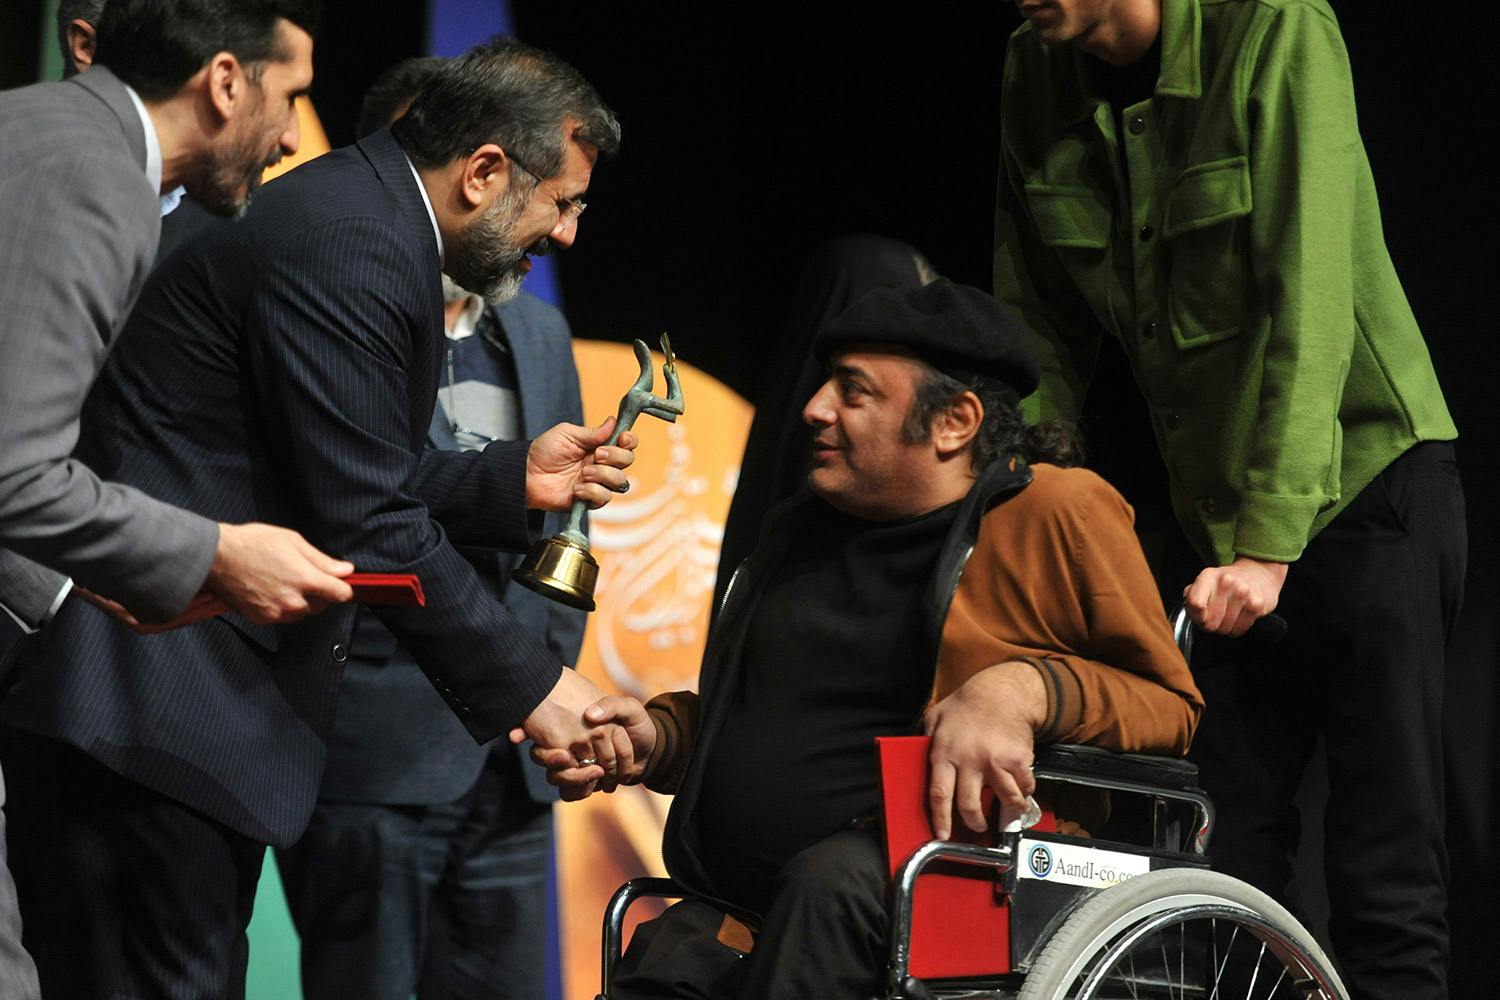 وزیر ارشاد در حال اهدای جایزه به یک هنرمند تئاتر دارای معلولیت در مراسم اختتامیه بخش فراگیر تئاتر فجر